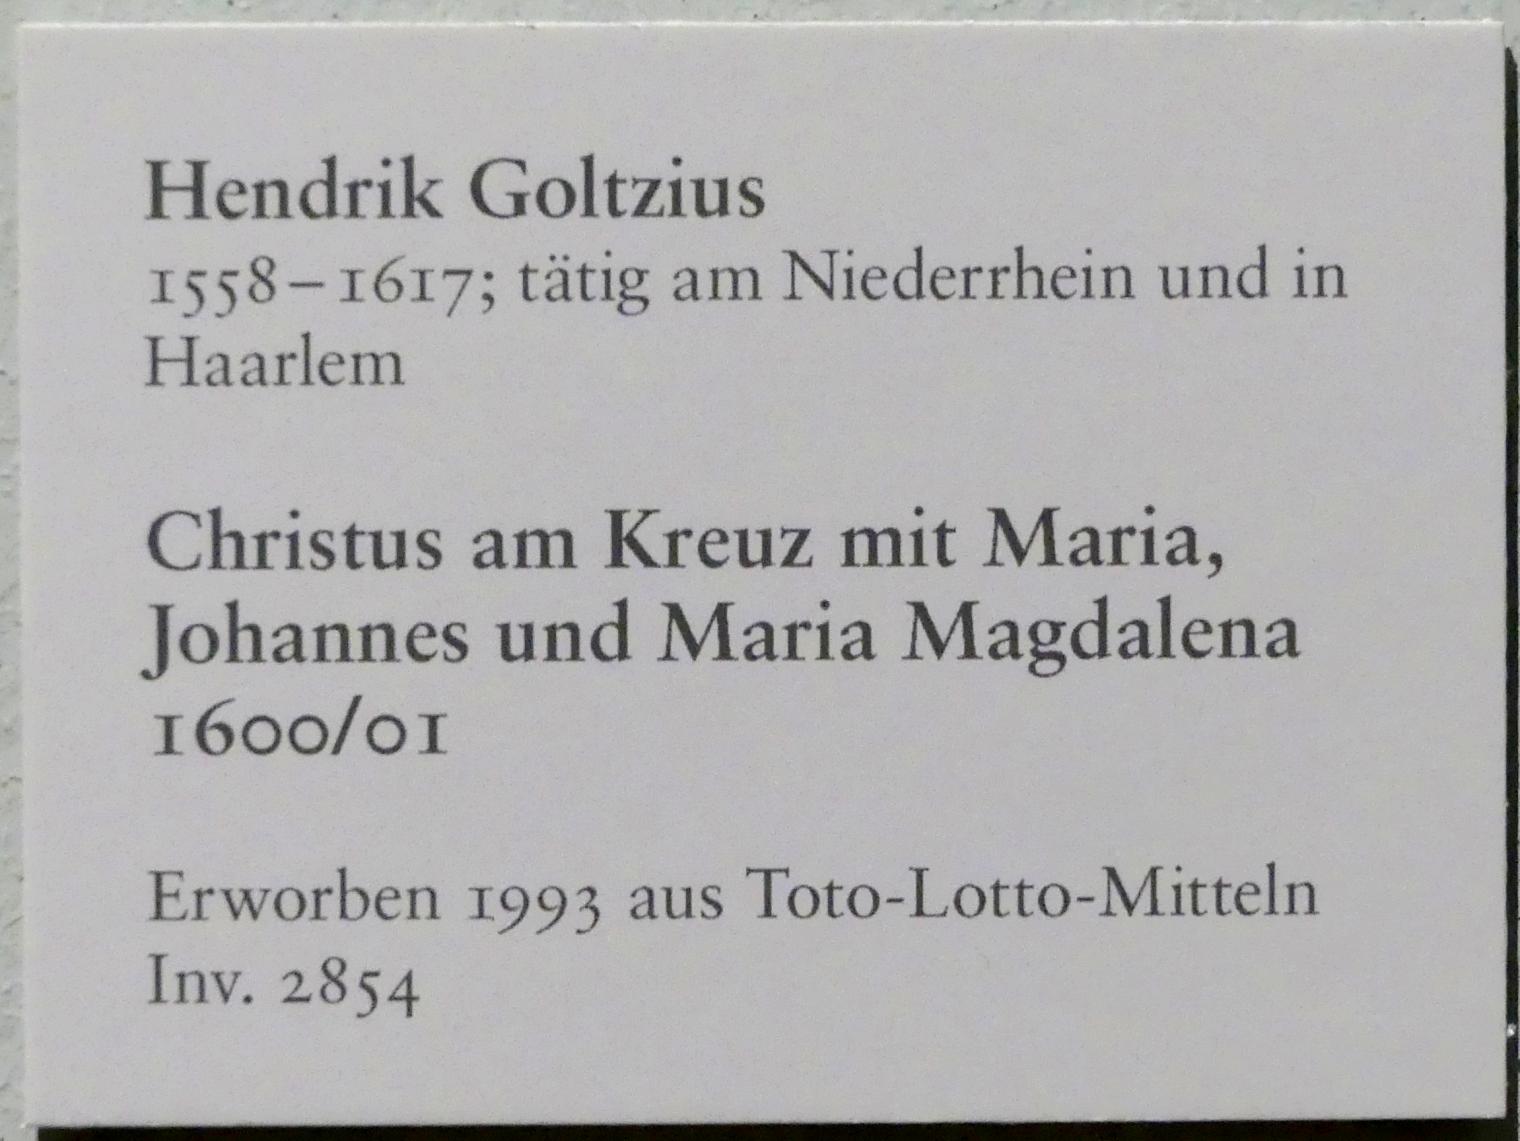 Hendrick Goltzius (1578–1616), Christus am Kreuz mit Maria, Johannes und Maria Magdalena, Karlsruhe, Staatliche Kunsthalle, Saal 69, 1600–1601, Bild 2/2